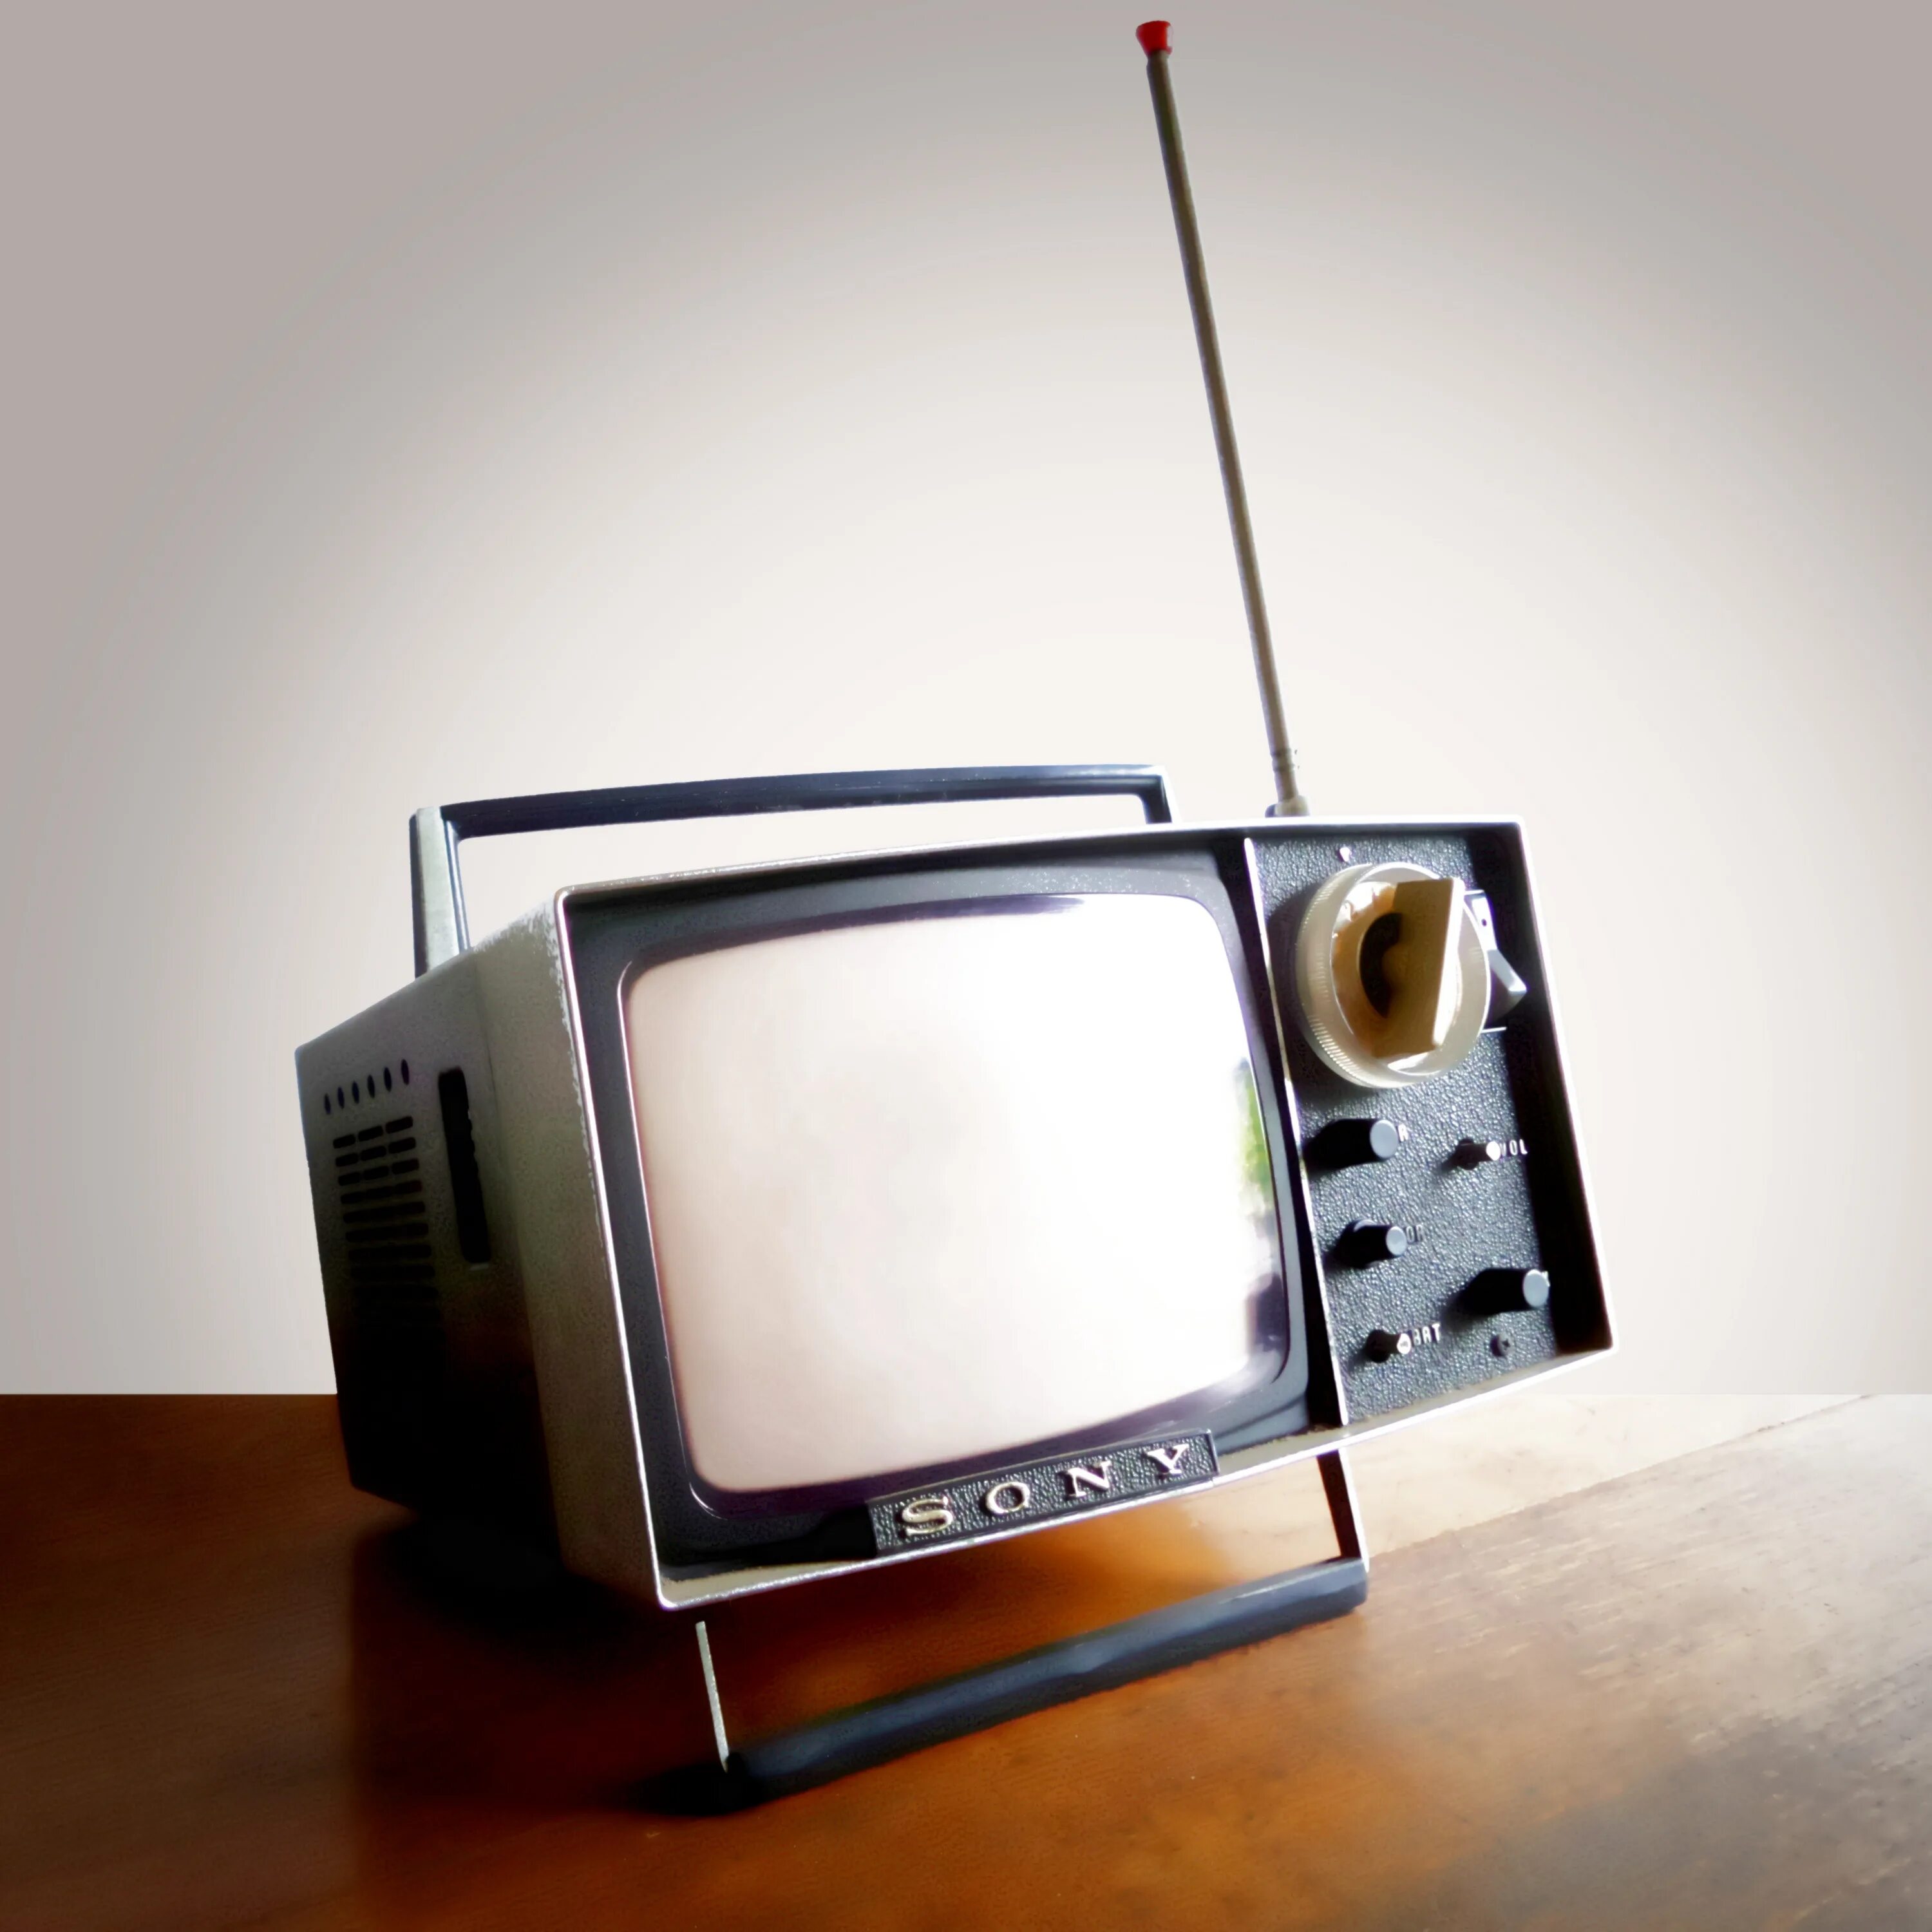 Тв качестве. Маленький телевизор. Старый телевизор. Старый маленький телевизор. Портативный телевизор старый.